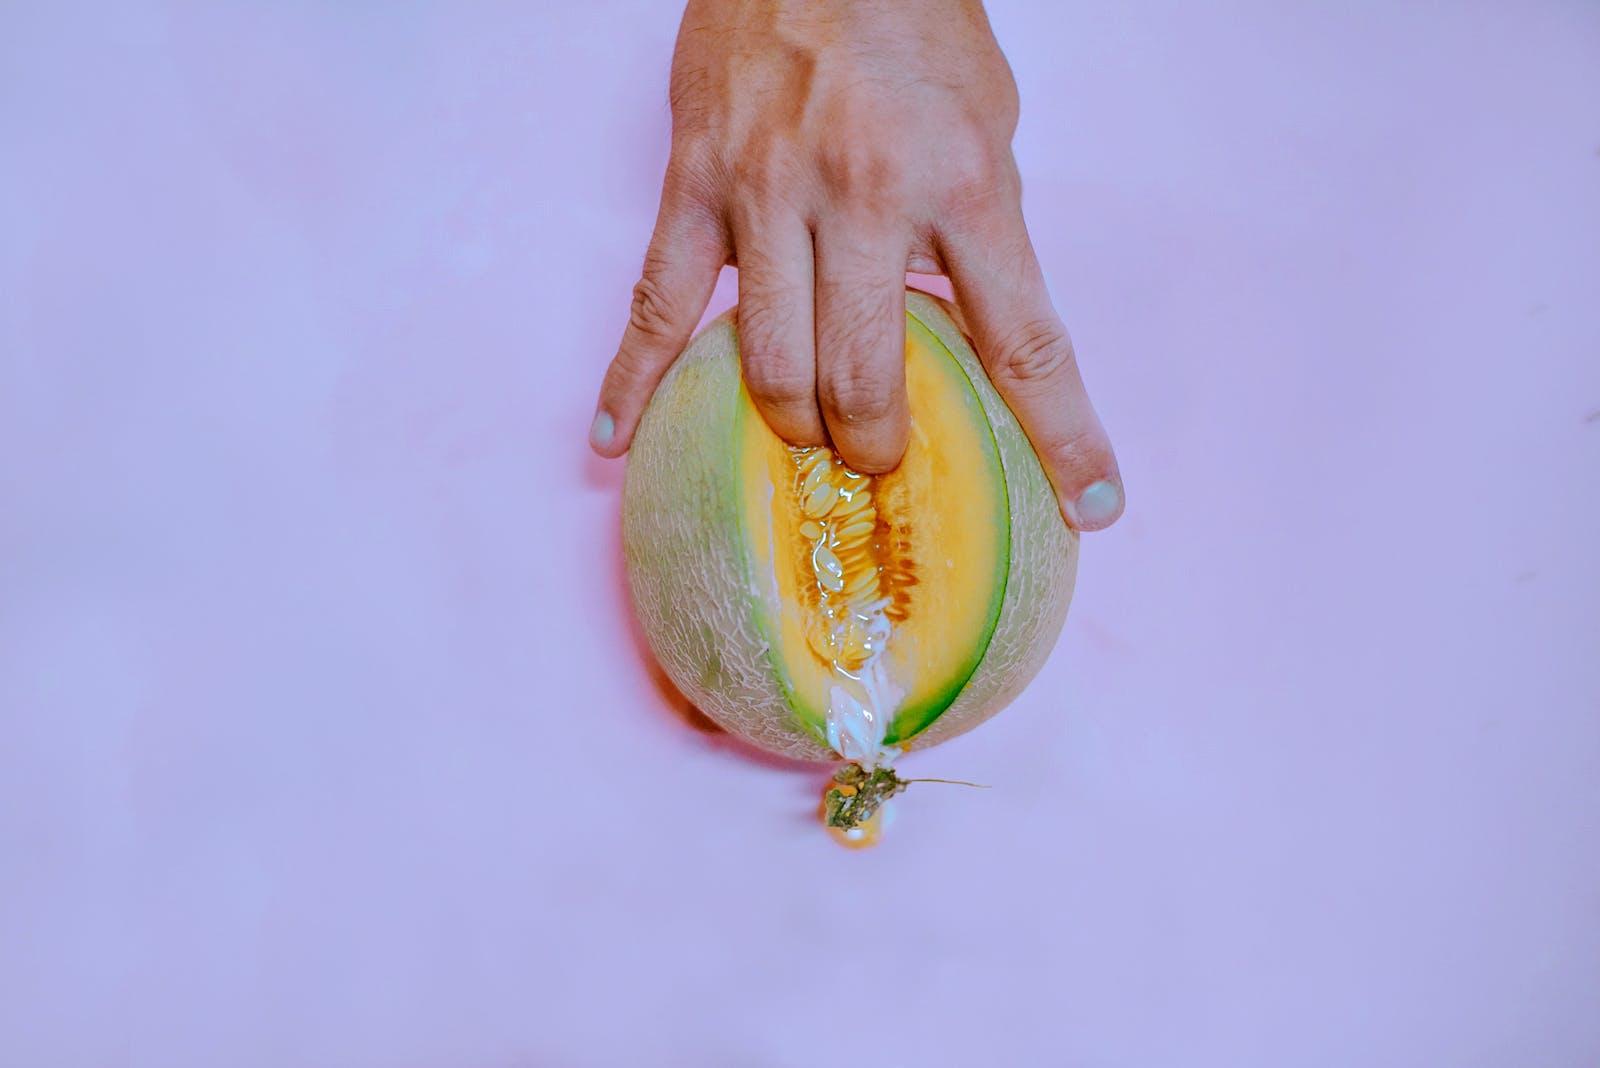 Les doigts sur un melon